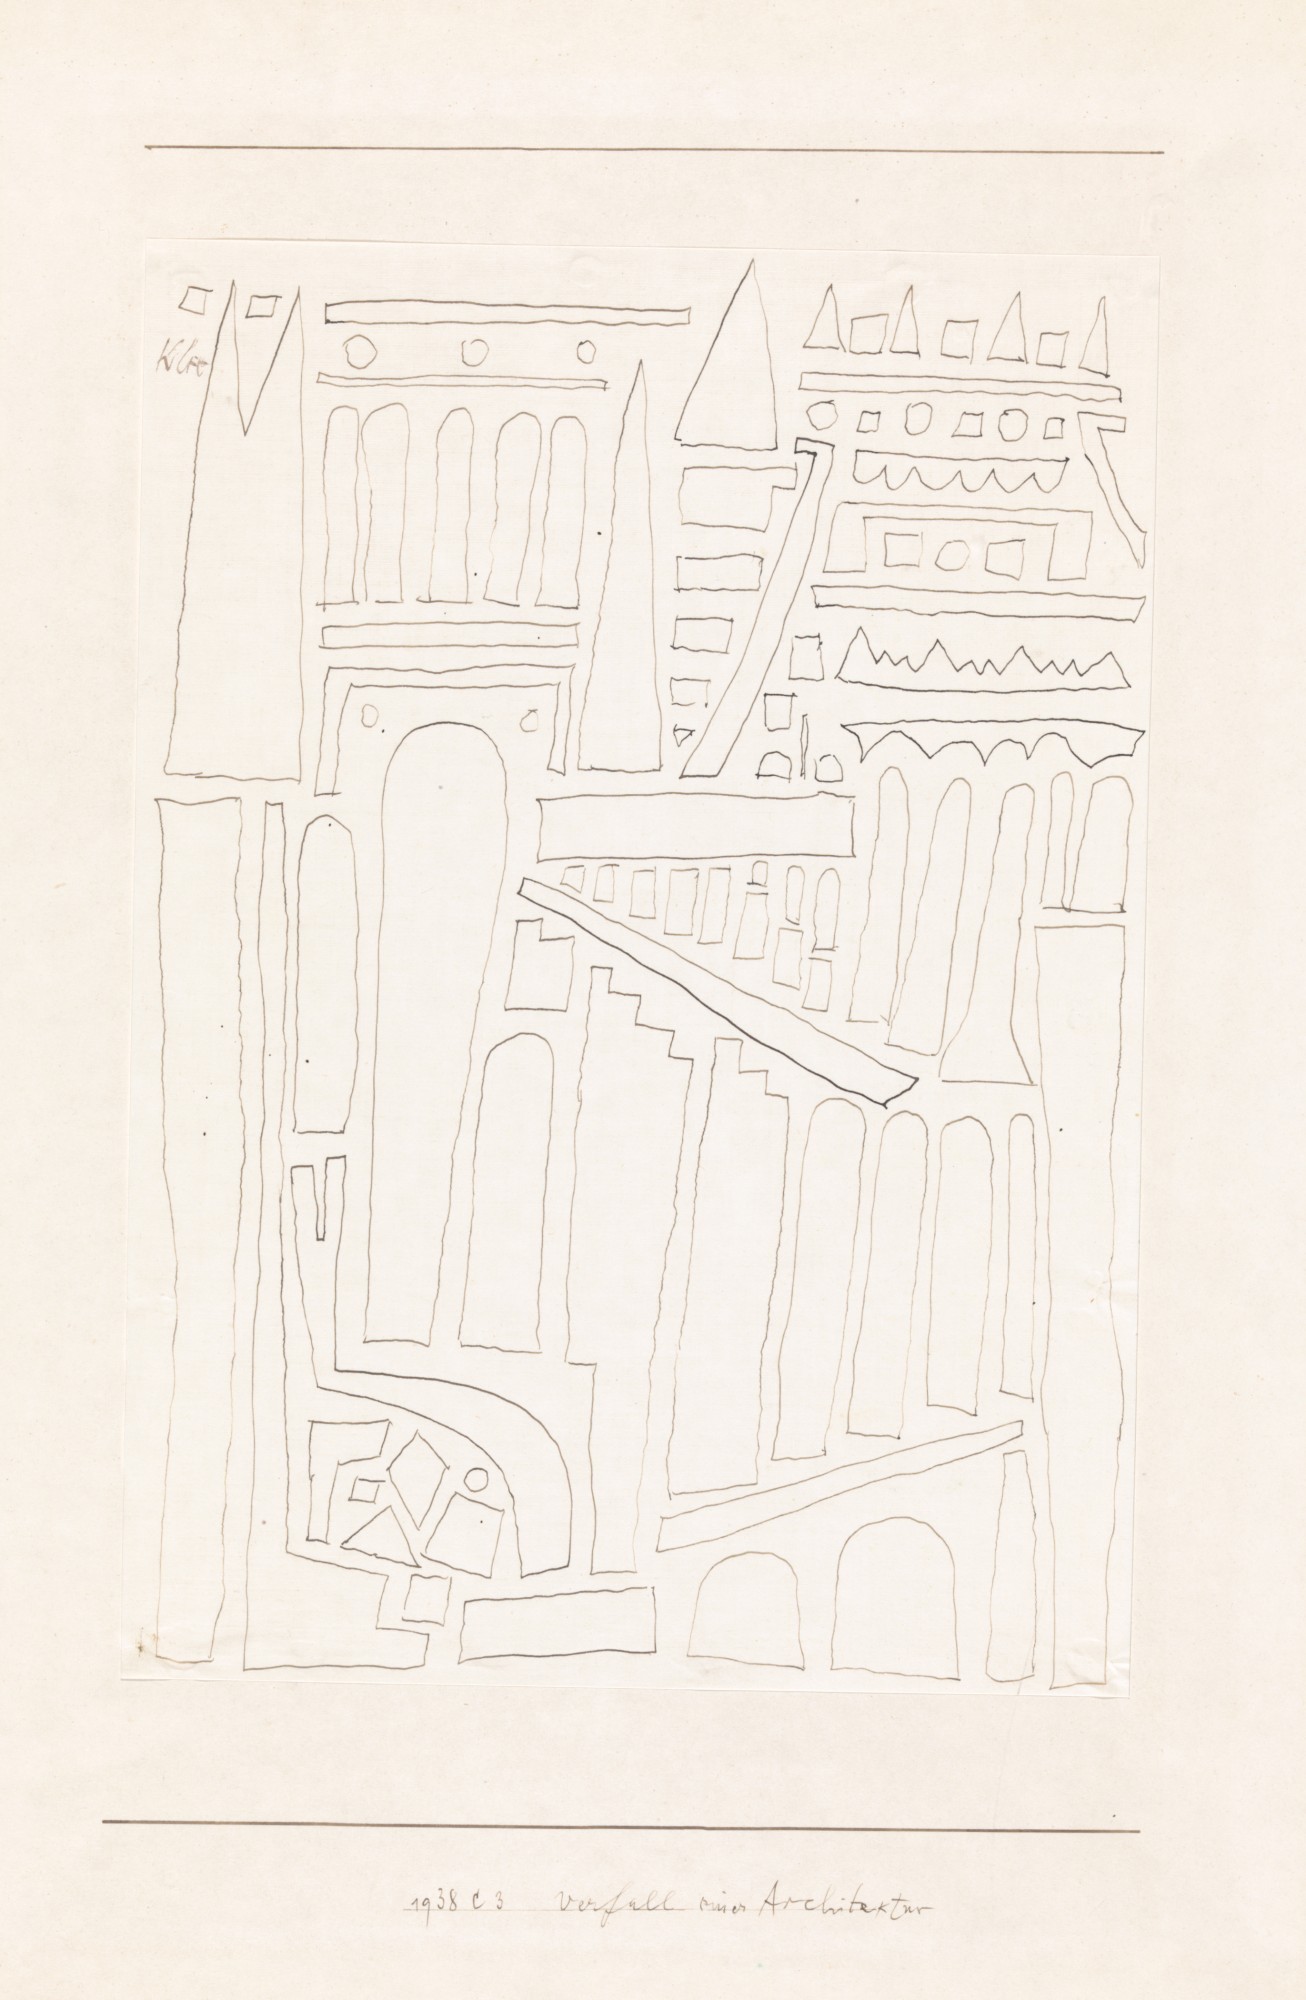 Paul Klee, "Verfall einer Architektur", 1938, 483